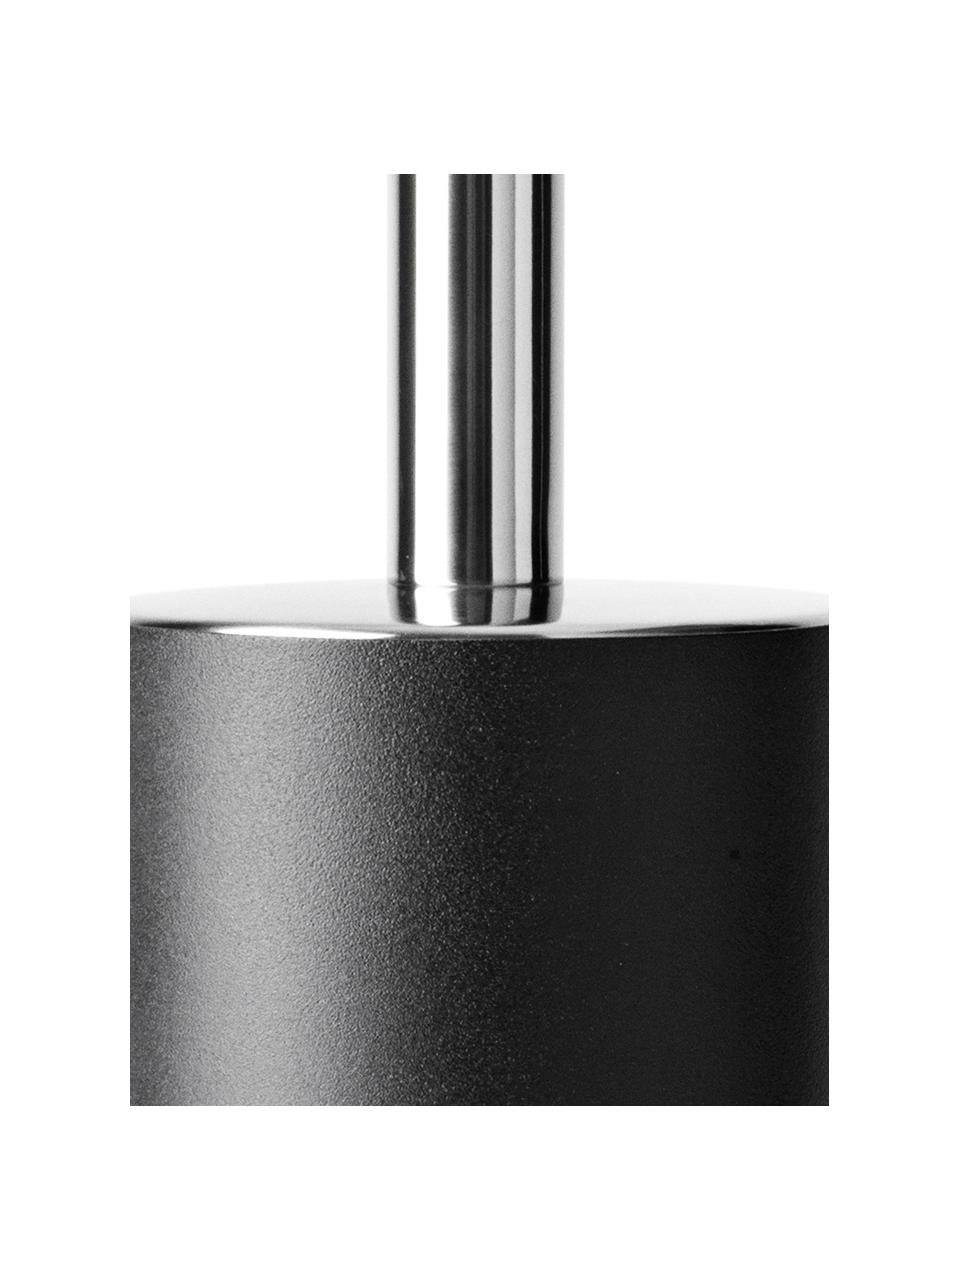 Toilettenbürste Matty aus Kunststoff mit Metallgriff, Metall, Kunststoff, Schwarz, Ø 10 x H 40 cm